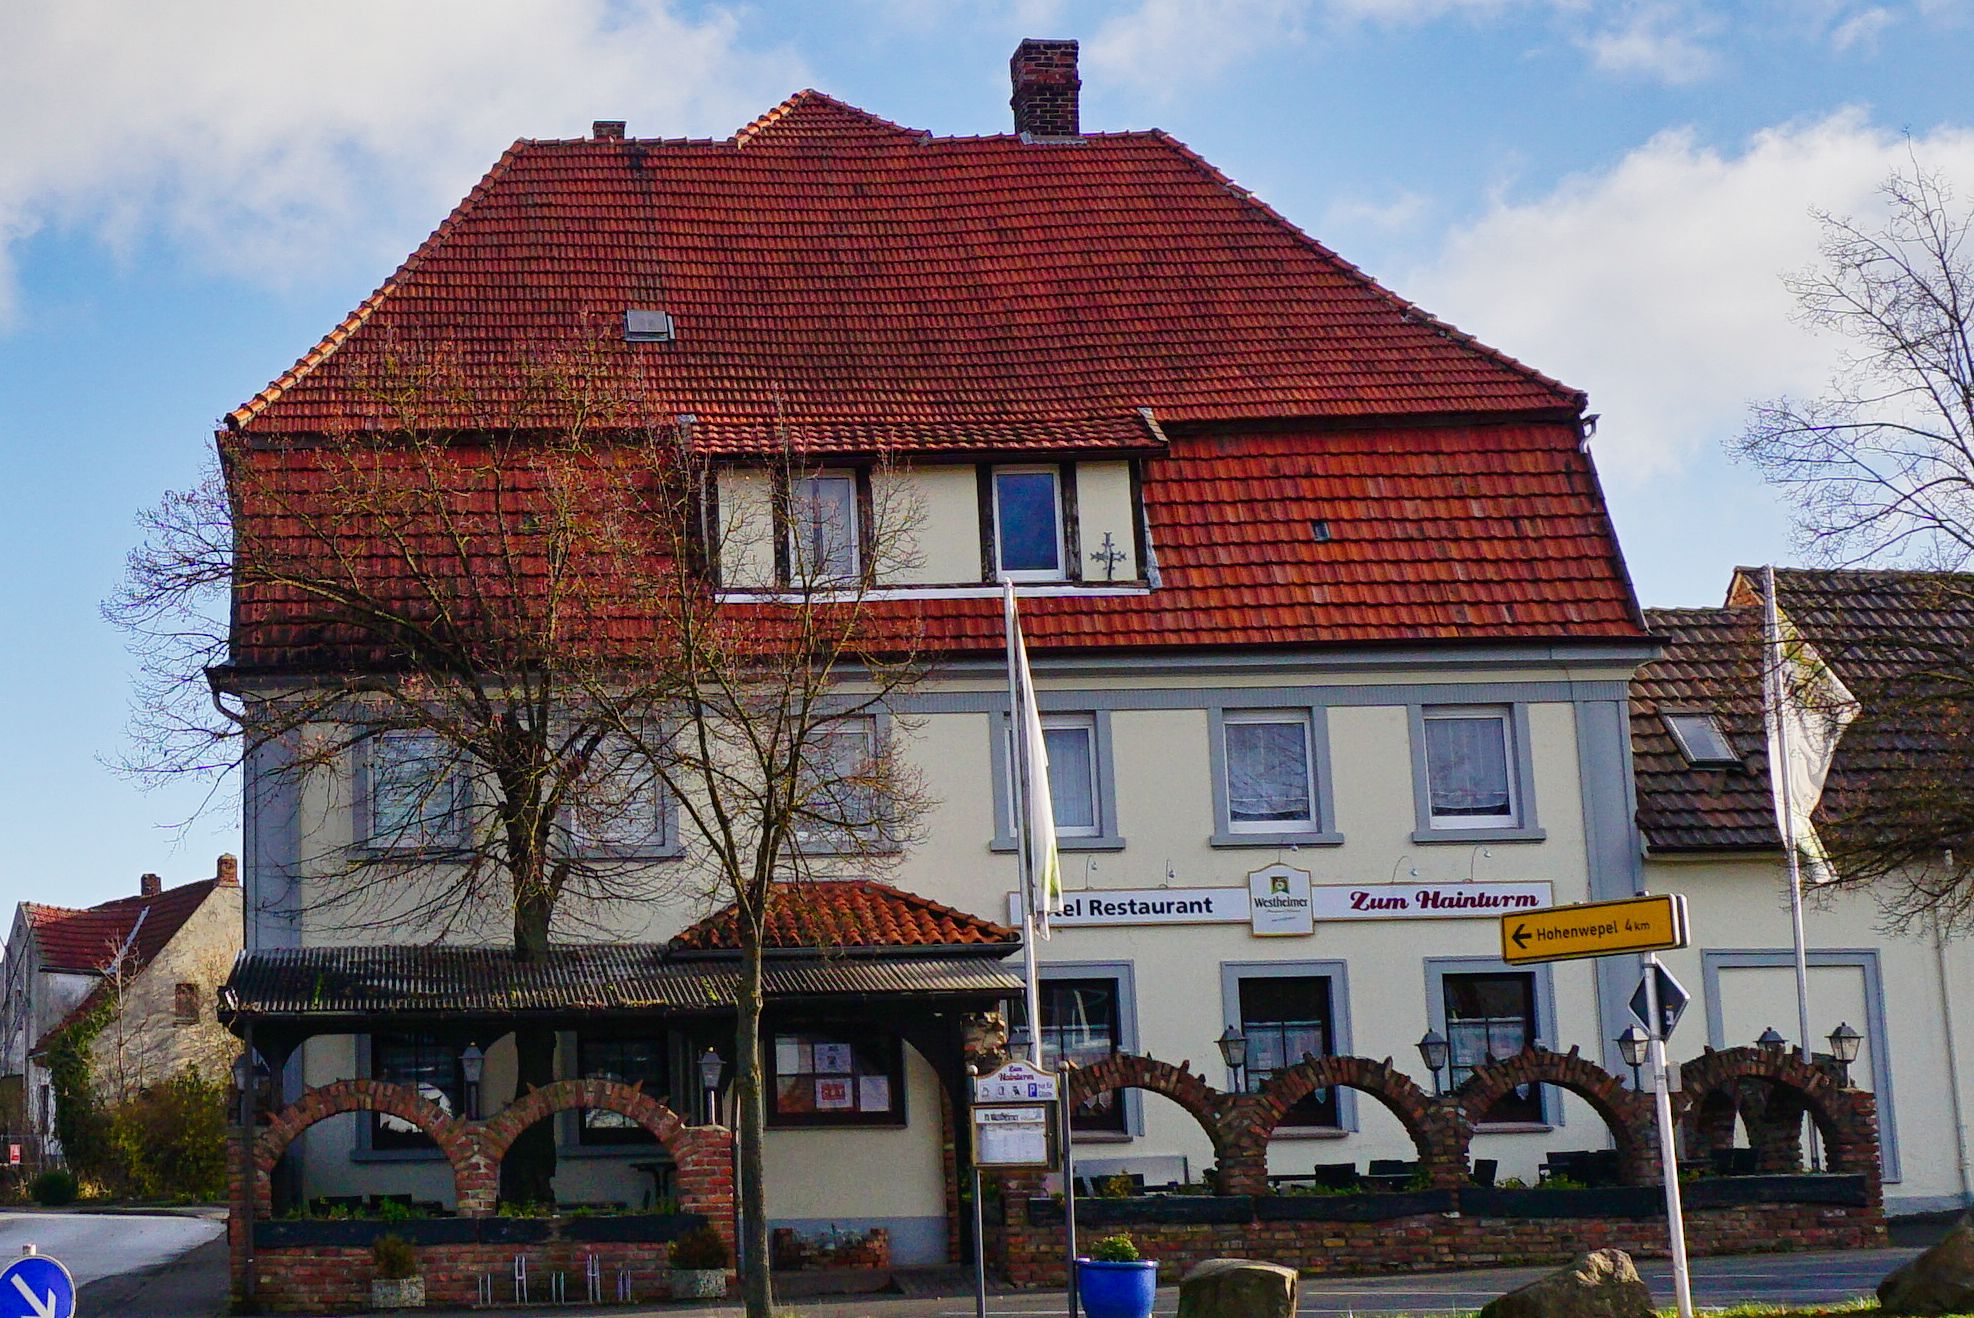 Hotel Zum Hainturm in Ossendorf, Warburg.
